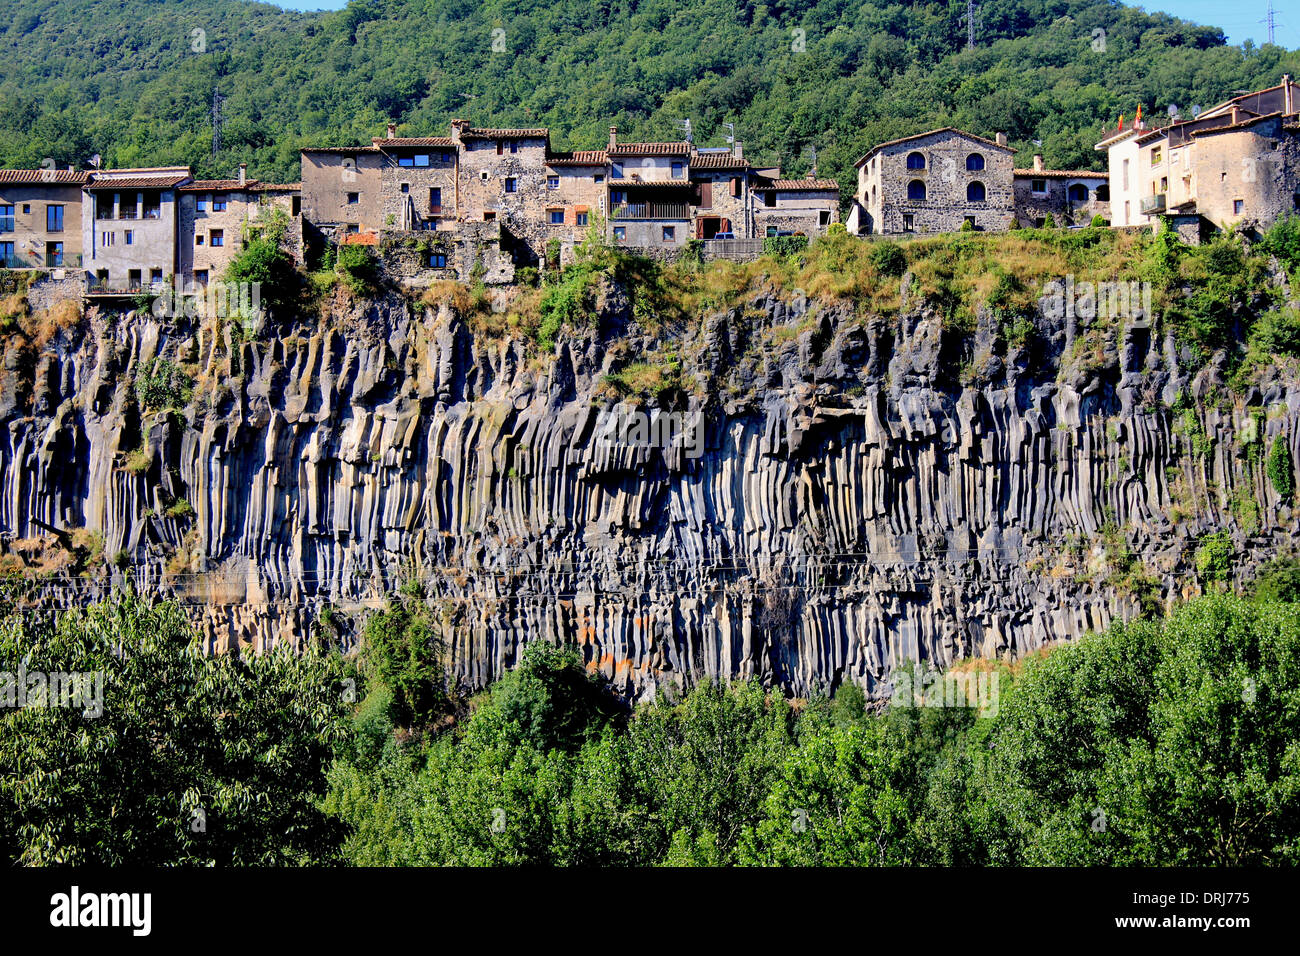 Village built on volcanic cliffs, Castellfollit de la Roca